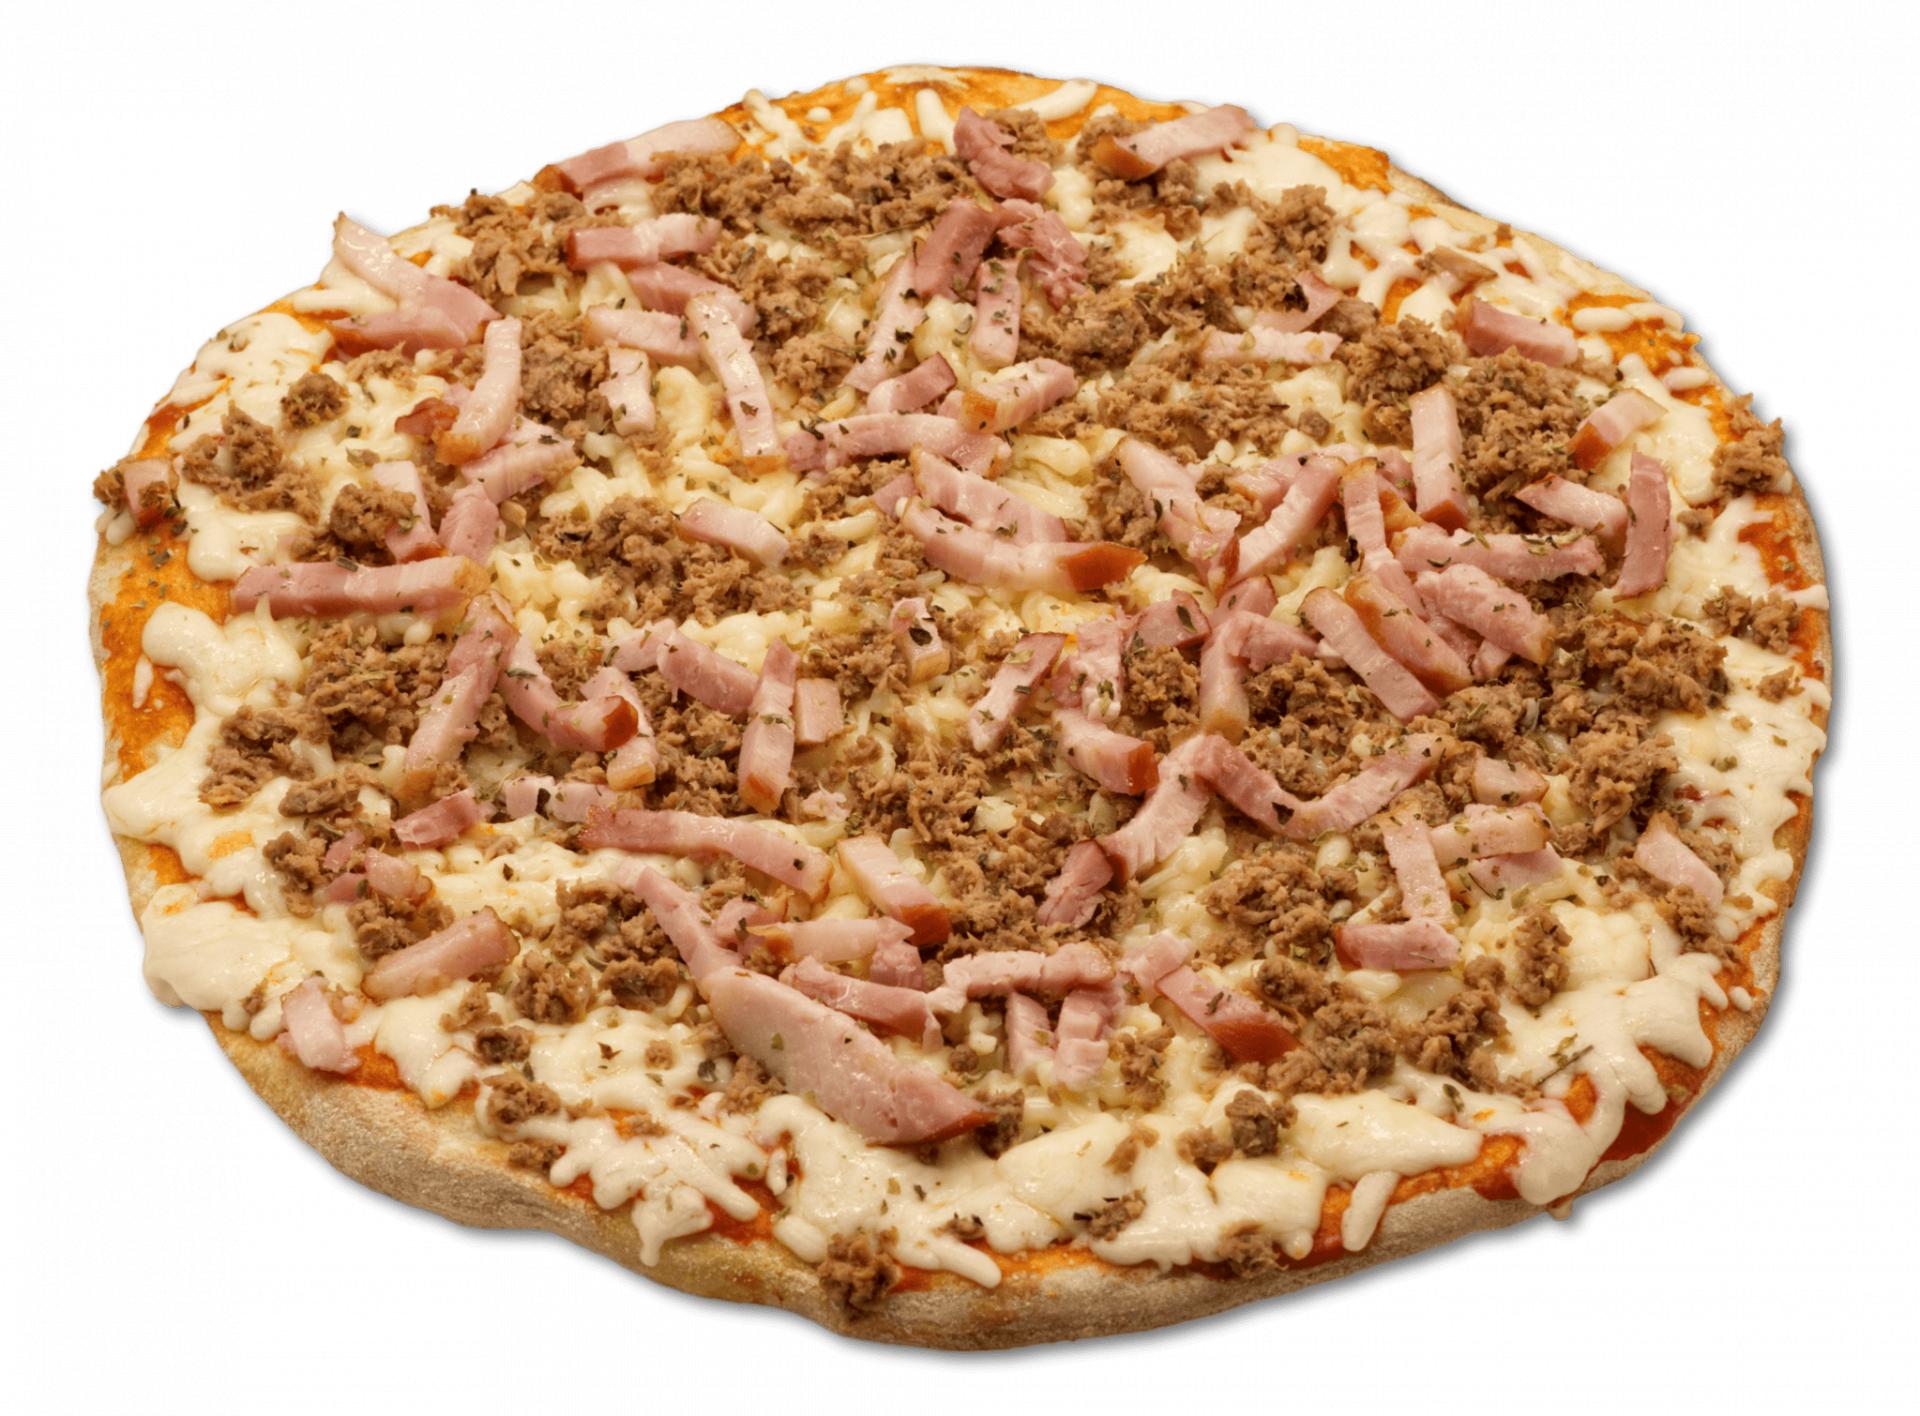 Pizza Artesana Atún y Bacon